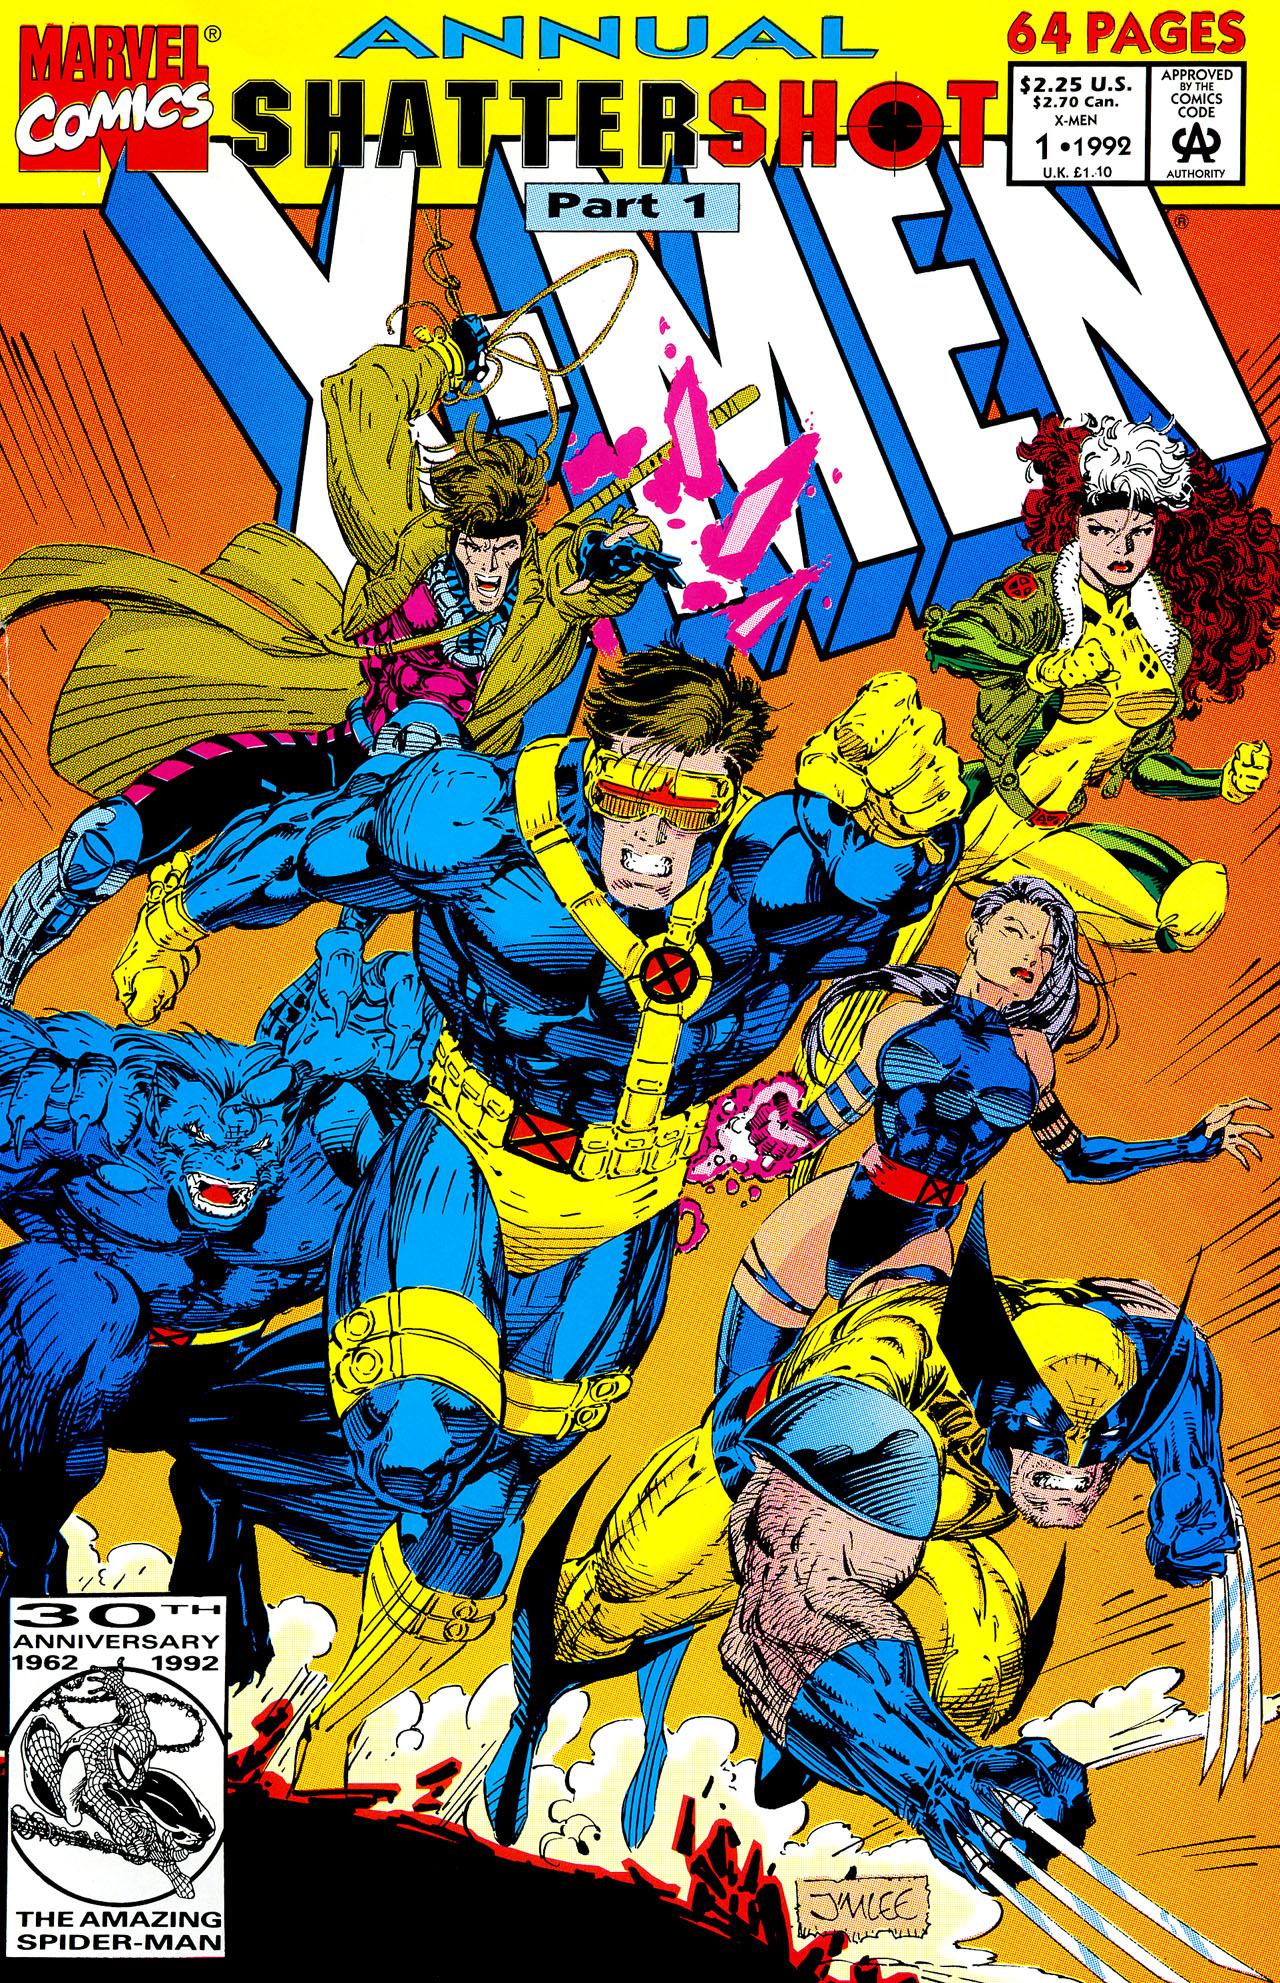 X-Men Vol. 2 #1